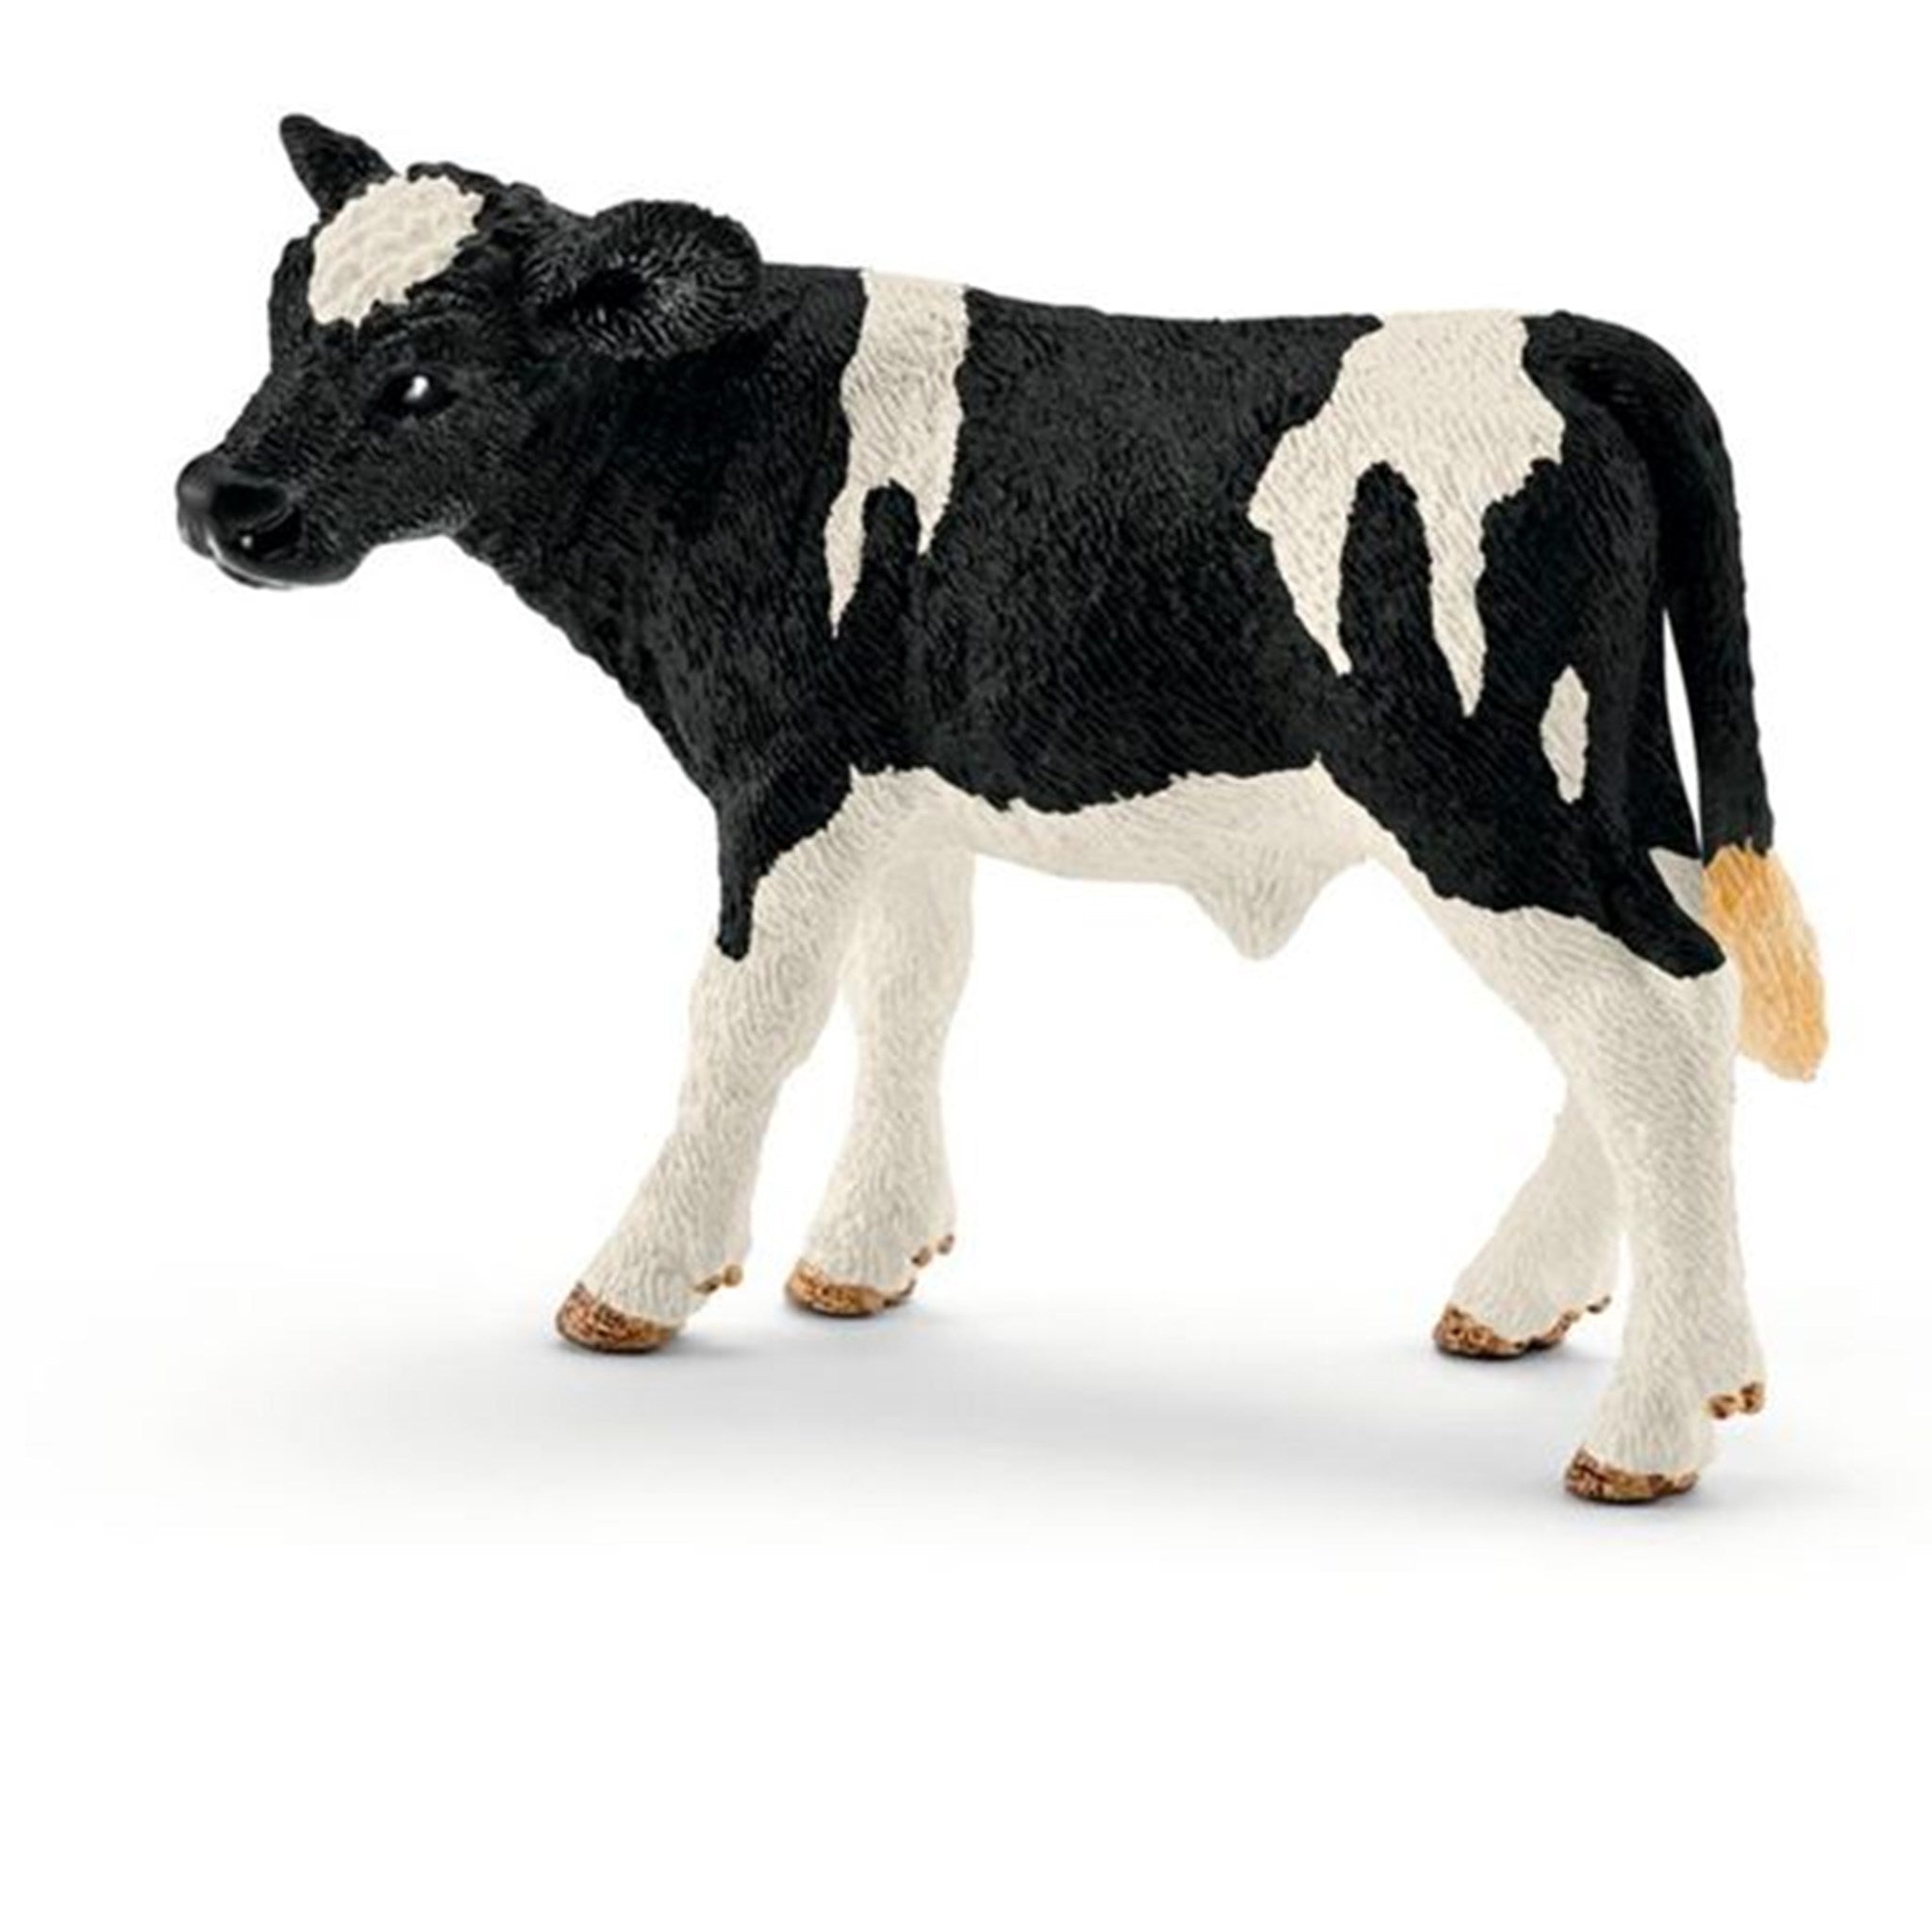 Schleich Farm World Holstein Calf